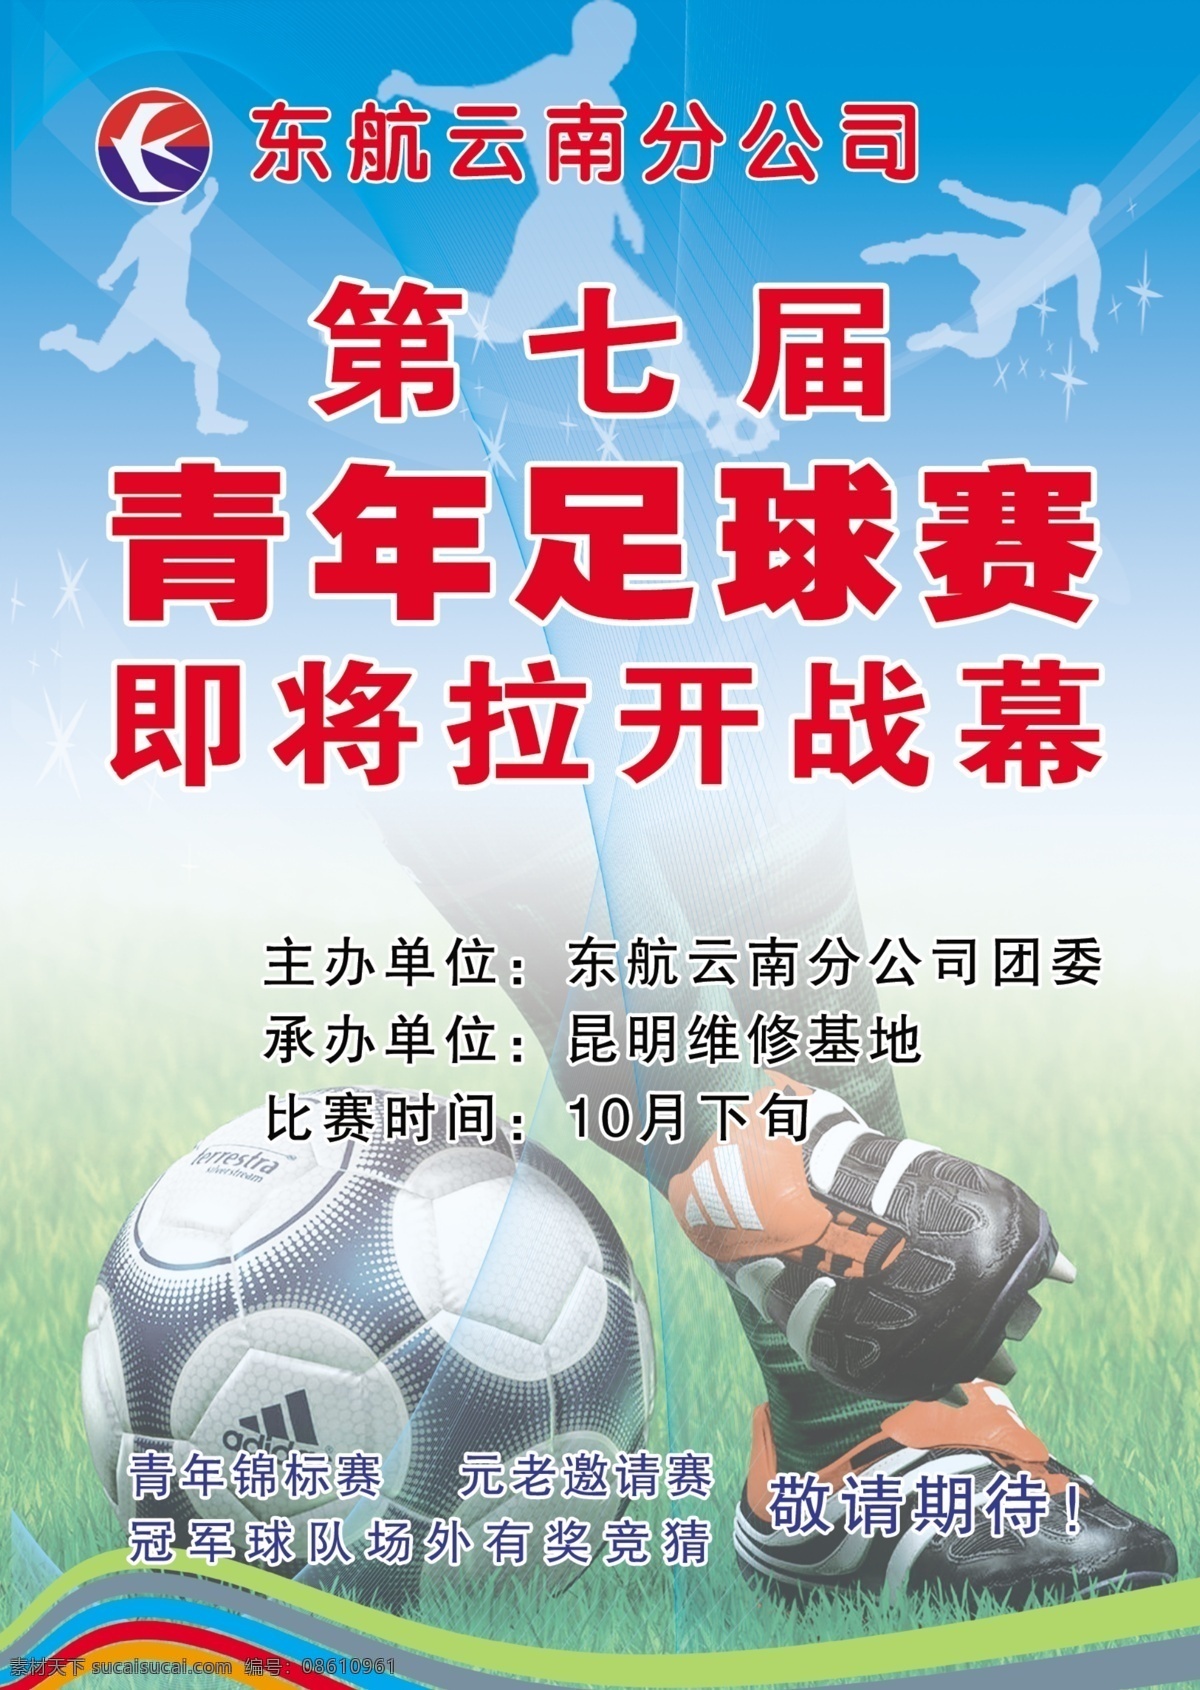 足球赛 模版下载 足球 足球赛海报 运动 体育运动 足球运动 足球赛事 源文件 青色 天蓝色